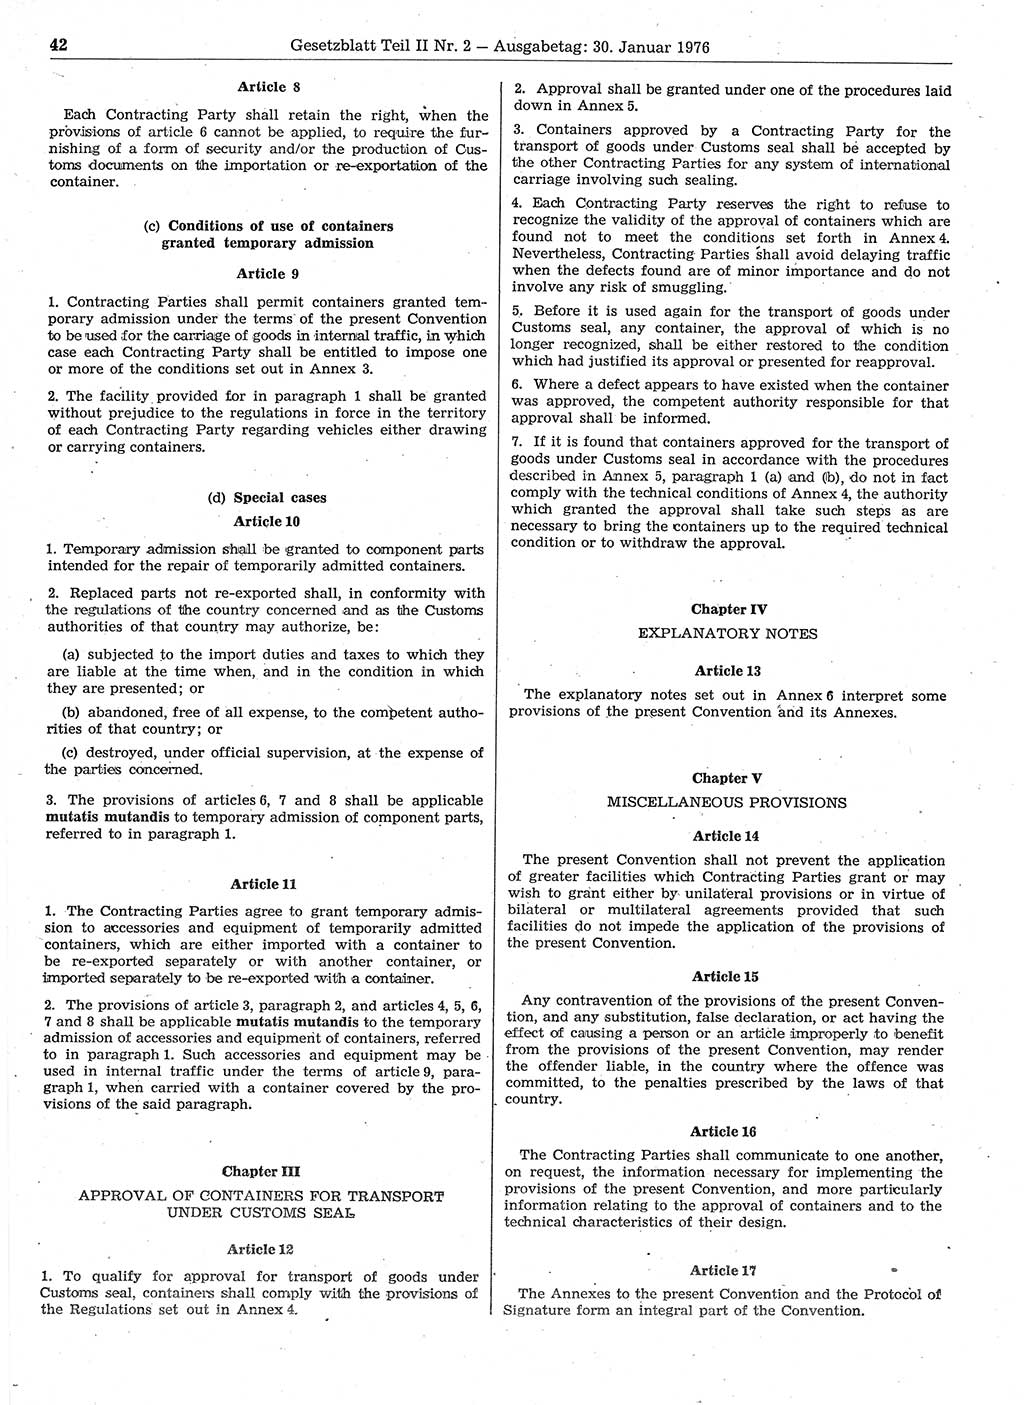 Gesetzblatt (GBl.) der Deutschen Demokratischen Republik (DDR) Teil ⅠⅠ 1976, Seite 42 (GBl. DDR ⅠⅠ 1976, S. 42)